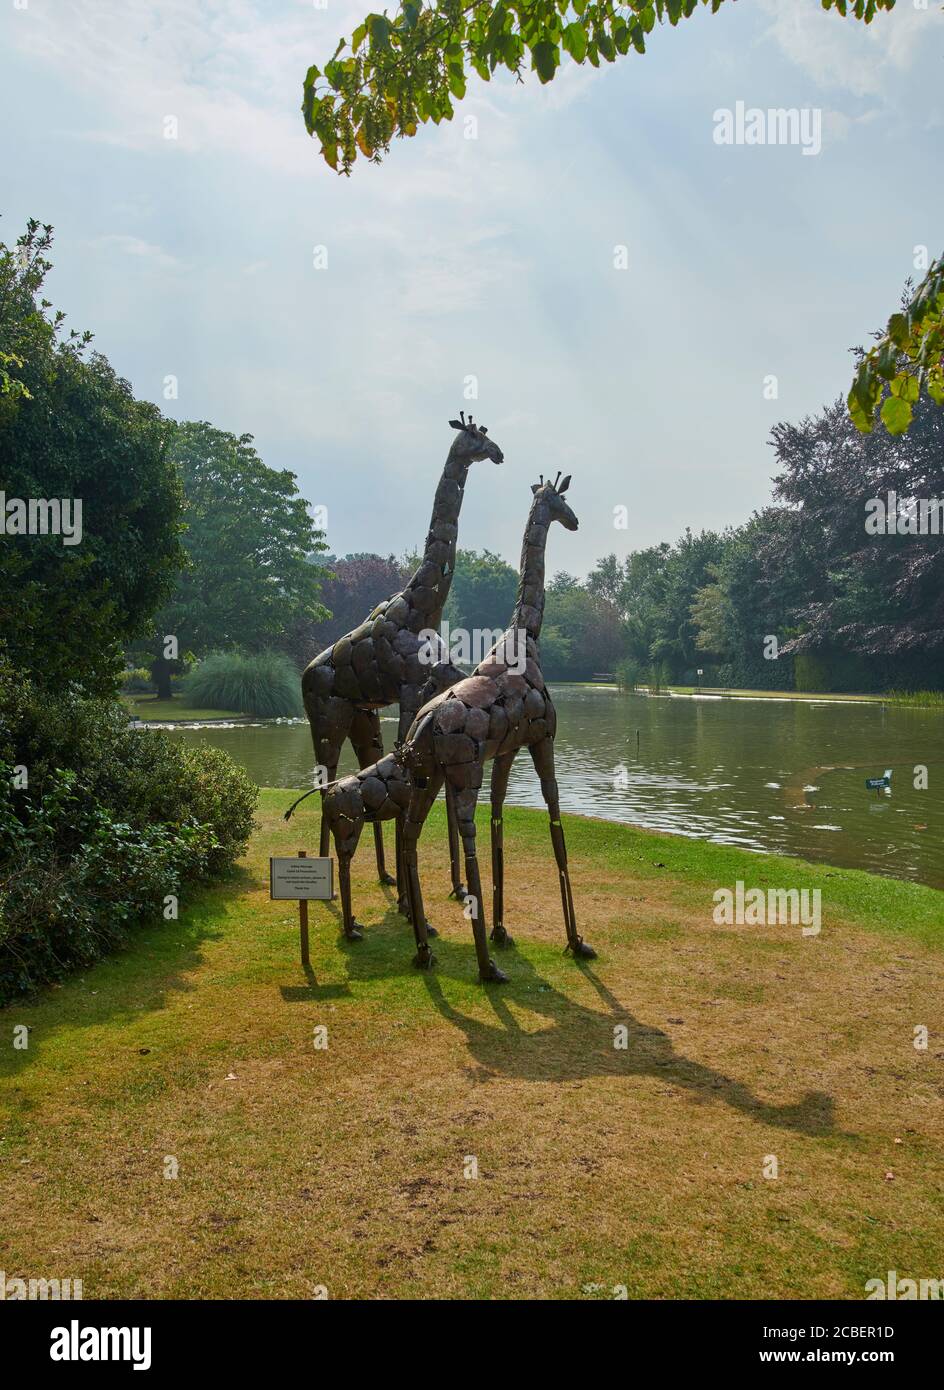 Metal Giraffe sculptureÕs vue sur un lac d'été, dans un jardin anglais, East Yorkshire, Angleterre, Royaume-Uni, GB. Banque D'Images